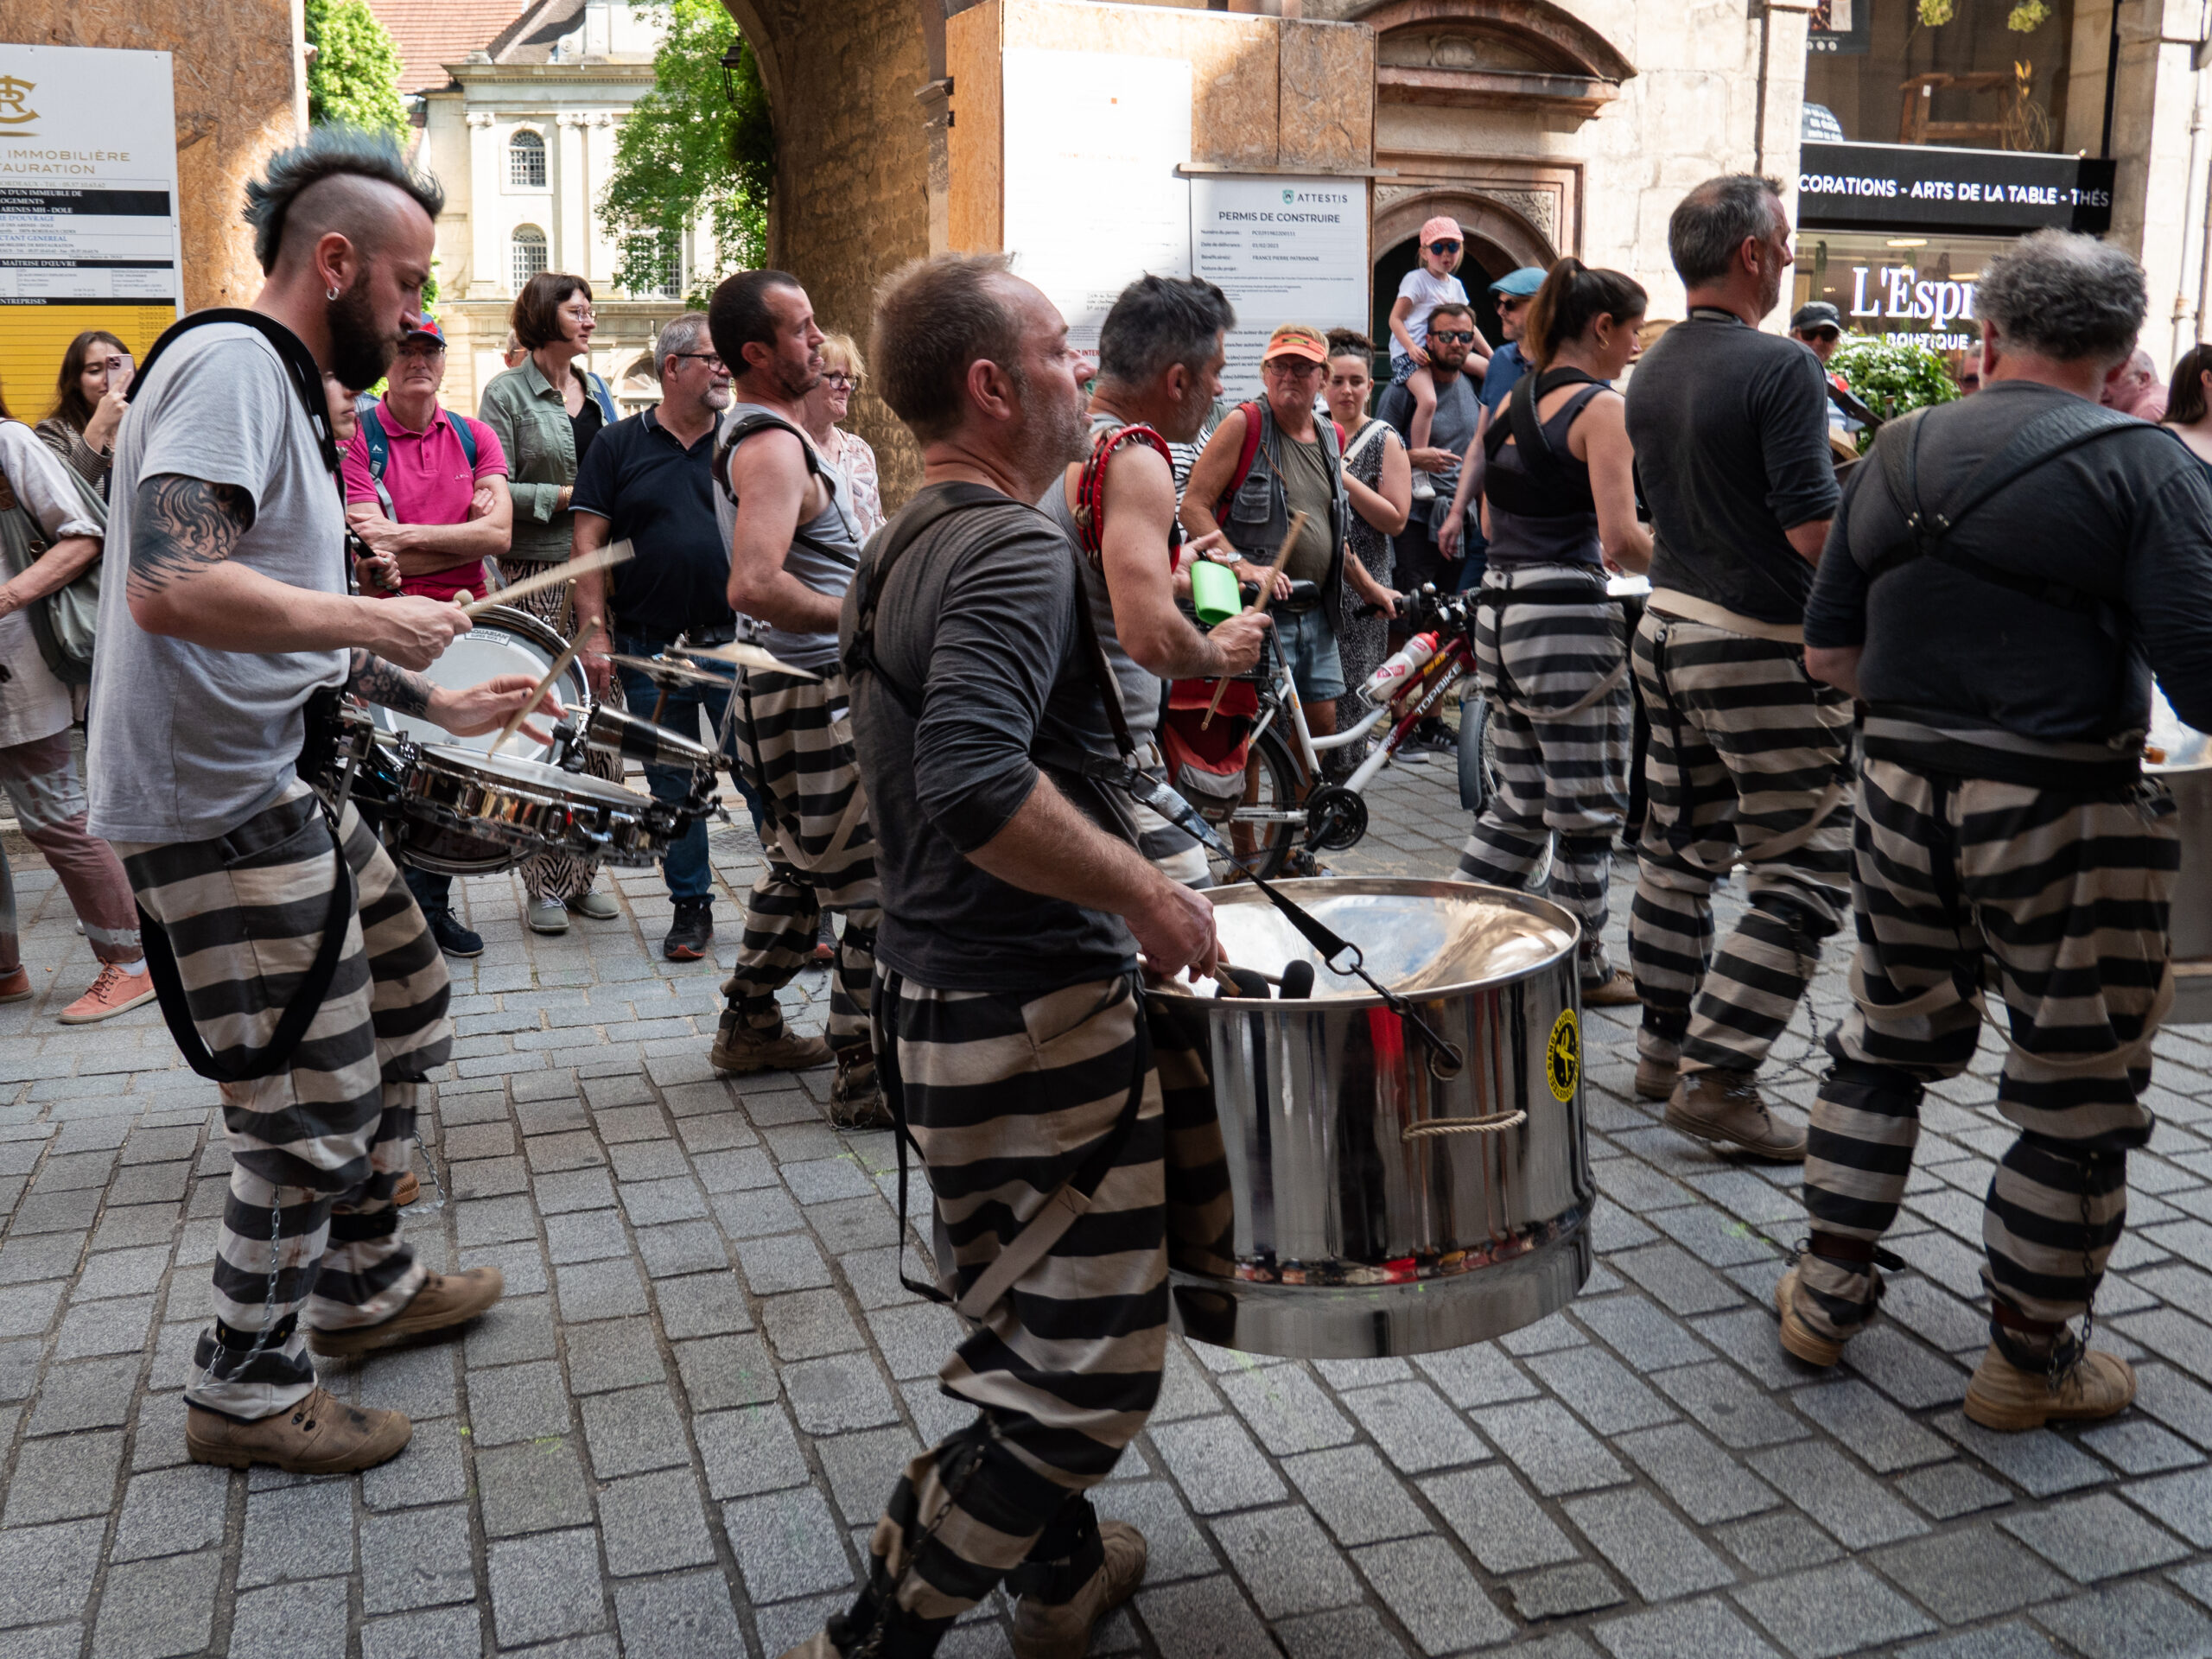 Fanfare de rue composée de diverses percussions, les musiciens sont habillés de bas de pantalon de bagnard, gris à rayures horizontales noires